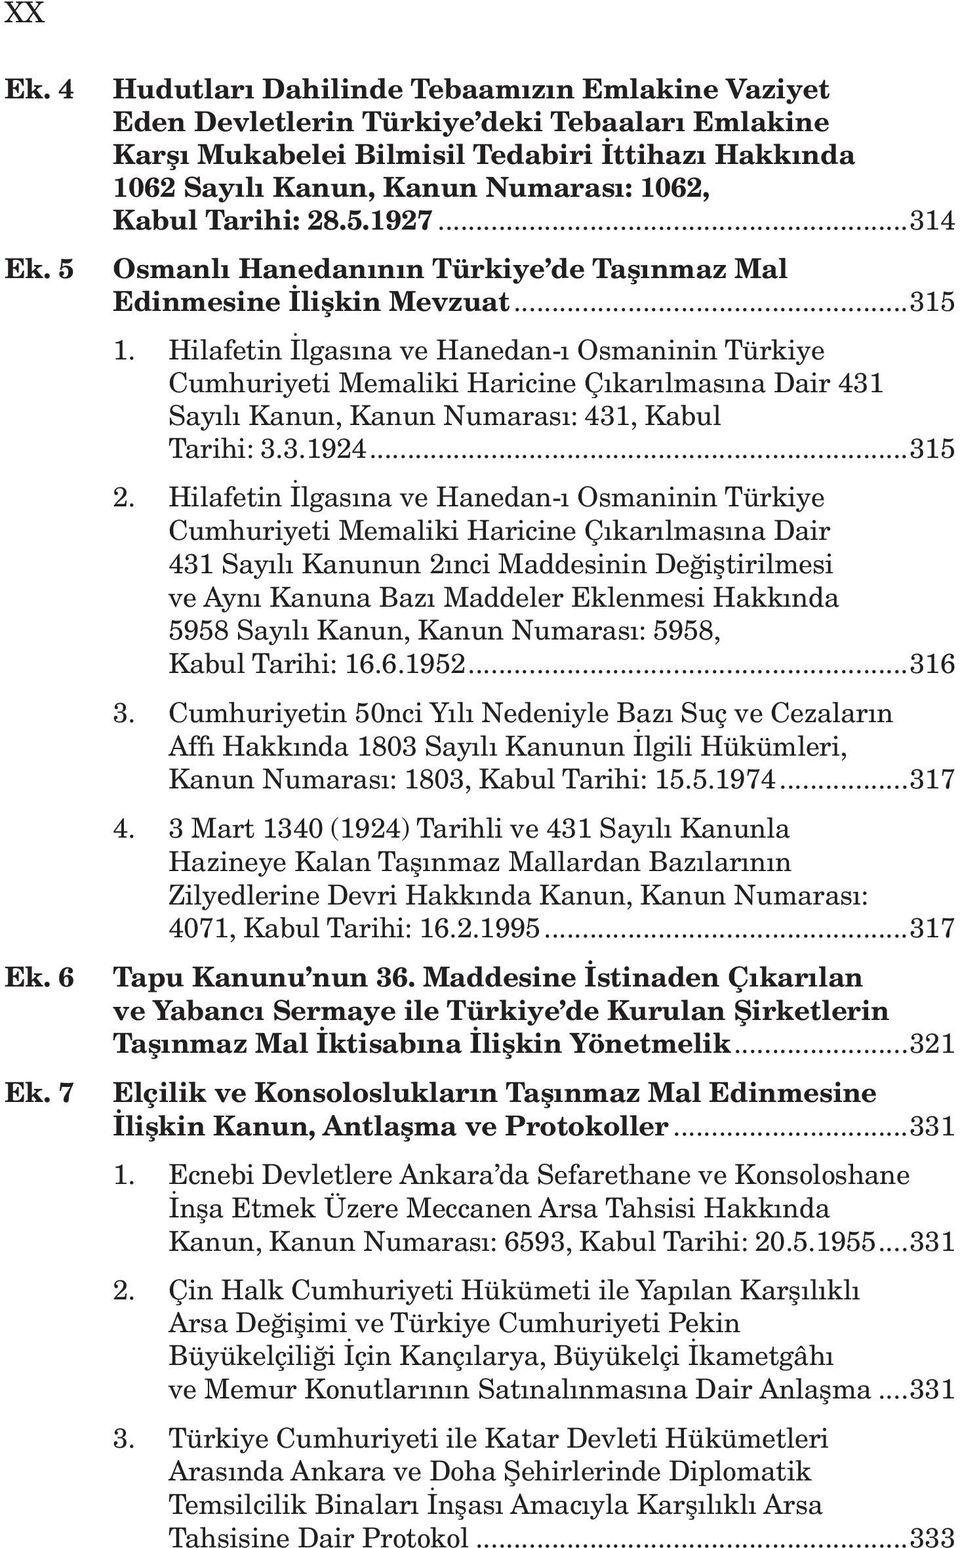 Tarihi: 28.5.1927...314 Osmanlı Hanedanının Türkiye de Taşınmaz Mal Edinmesine İlişkin Mevzuat...315 1.